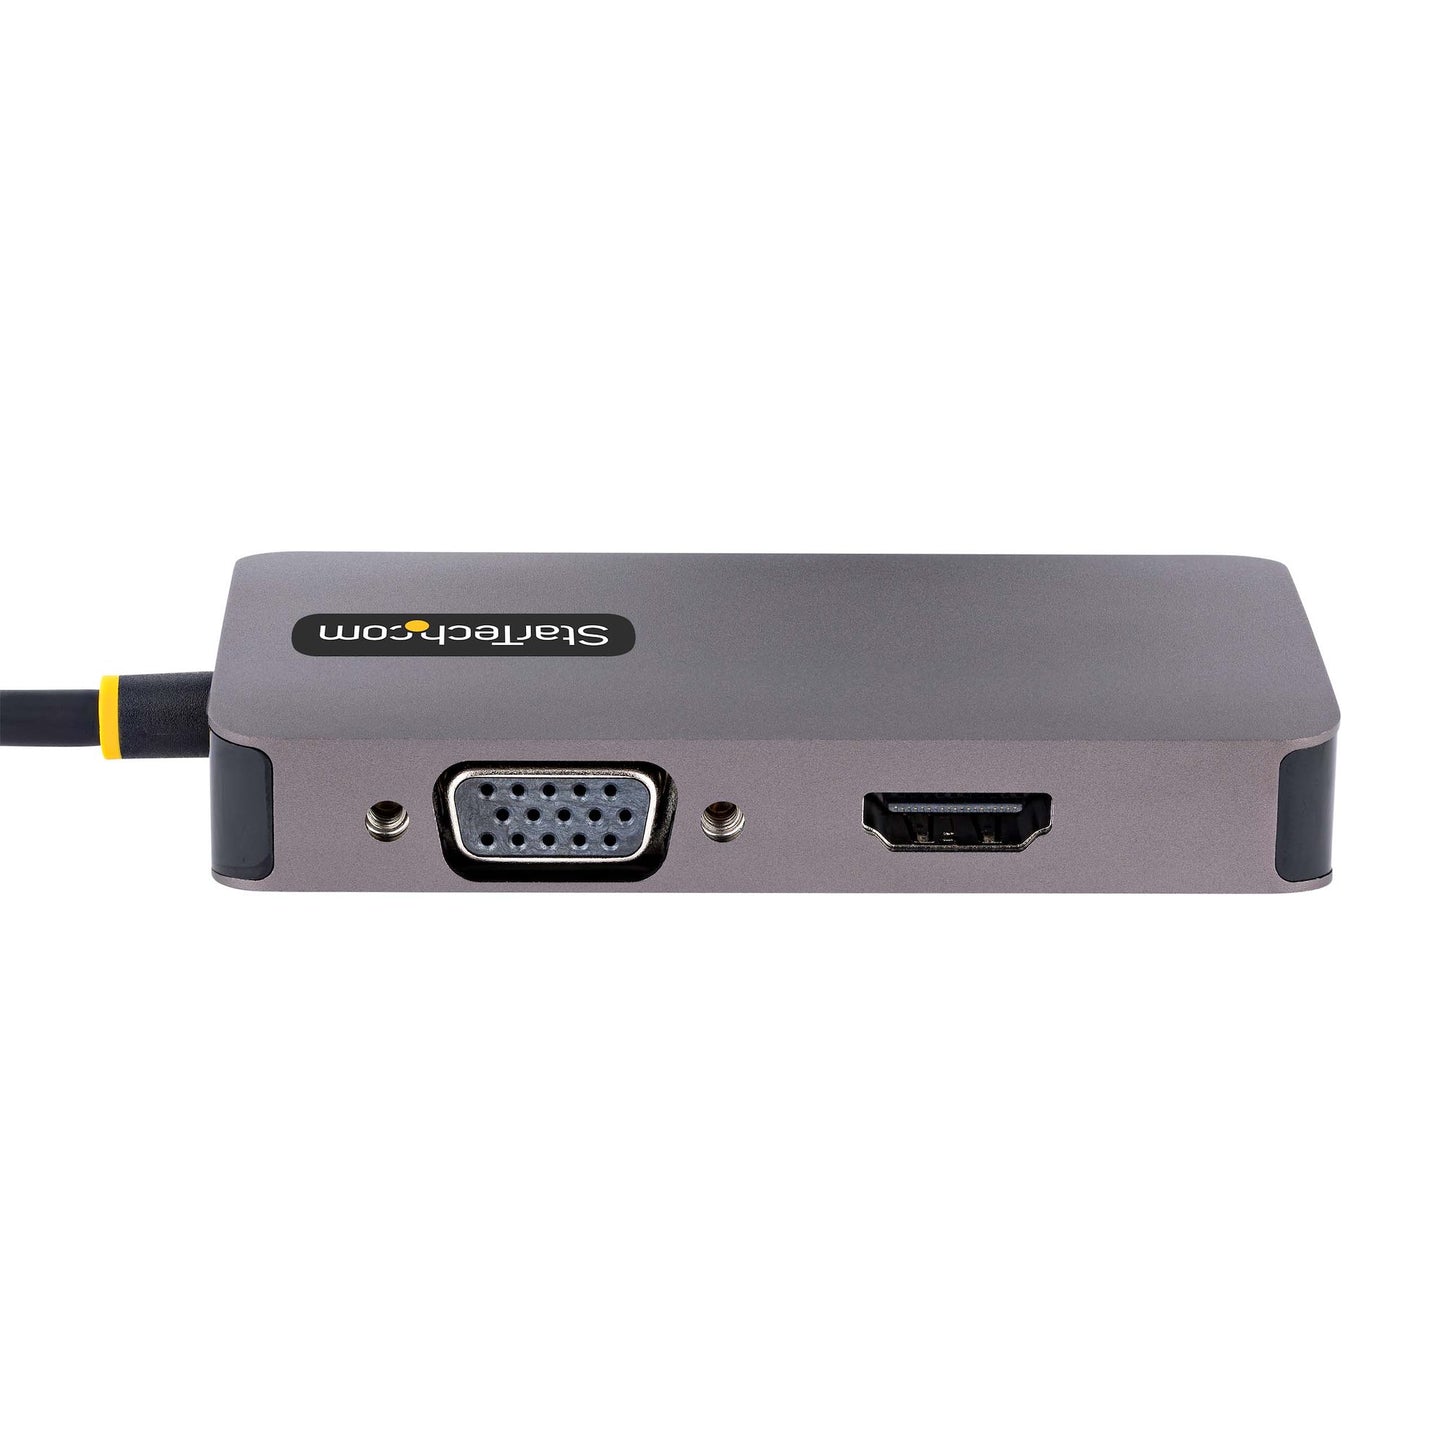 Adaptador de Video StarTech.com 118-USBC-HDMI-VGADVI, USB C - HDMI/VGA/DVI-I Hembra, Gris